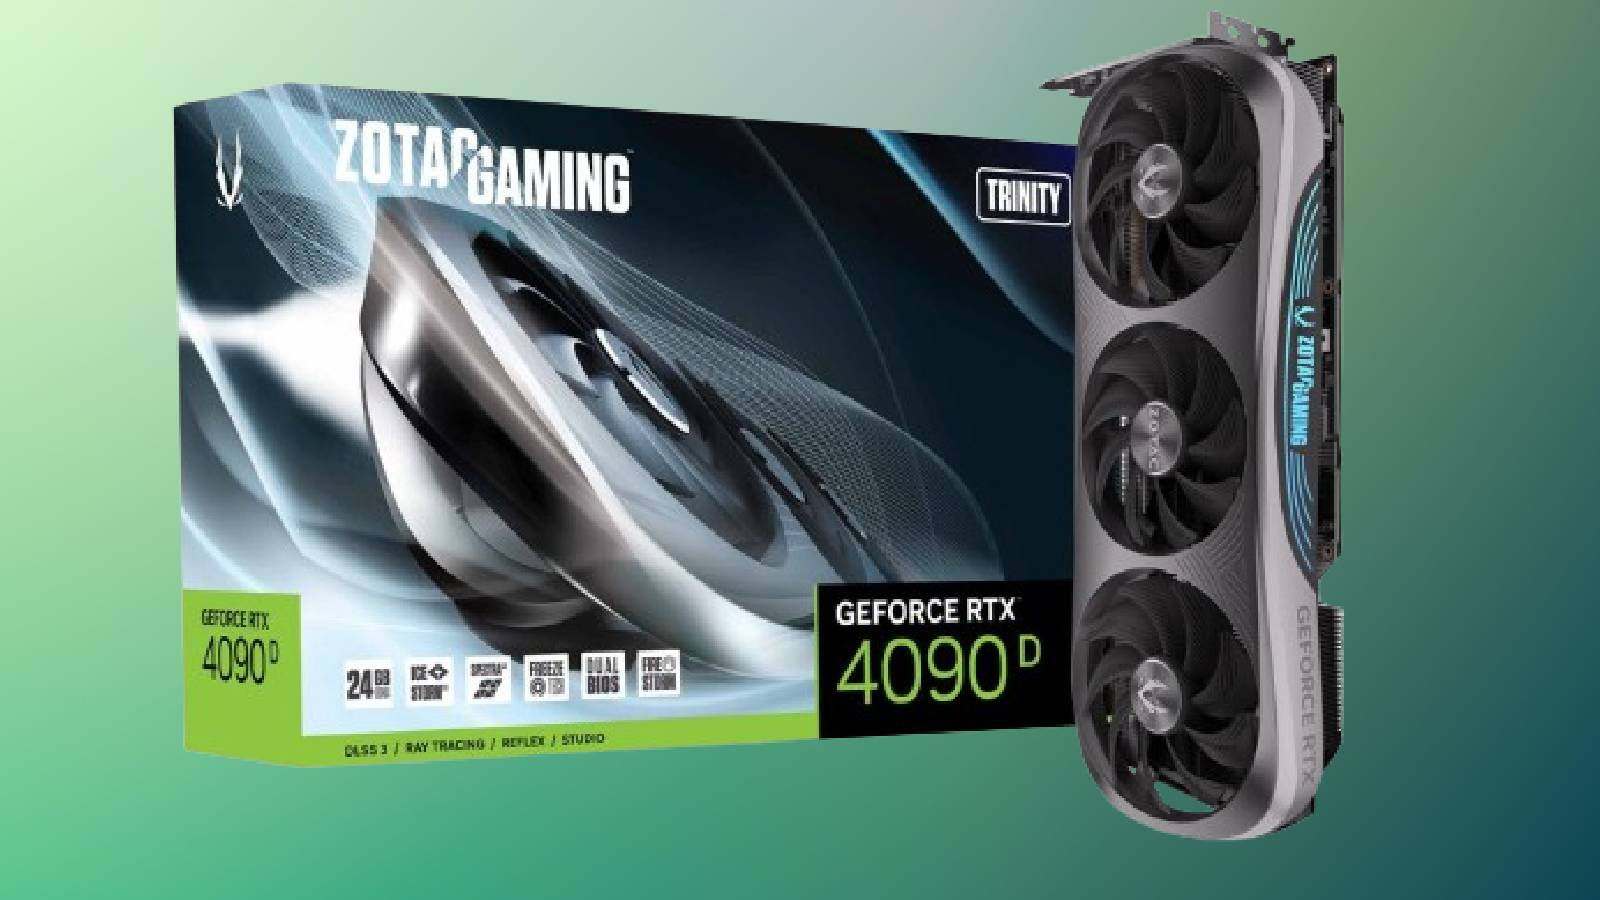 Цена на Nvidia GeForce RTX 4090D выросла в Китае после санкций США